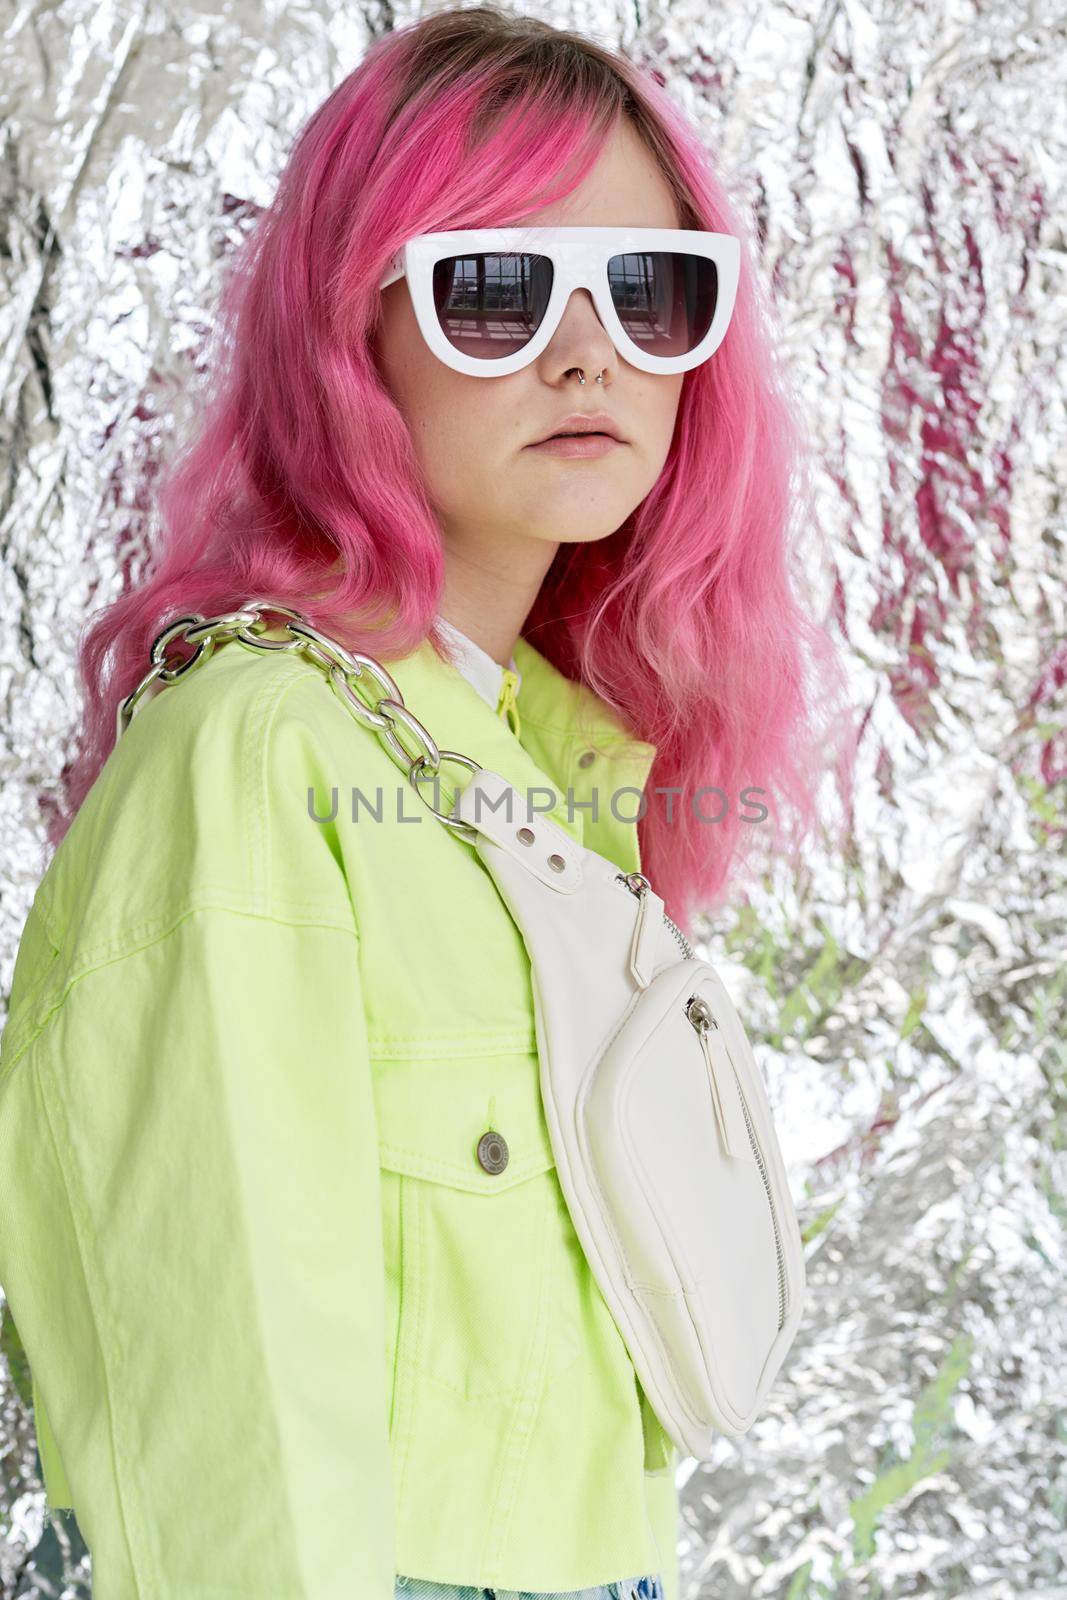 beautiful woman pink hair decoration summer style fashion by Vichizh